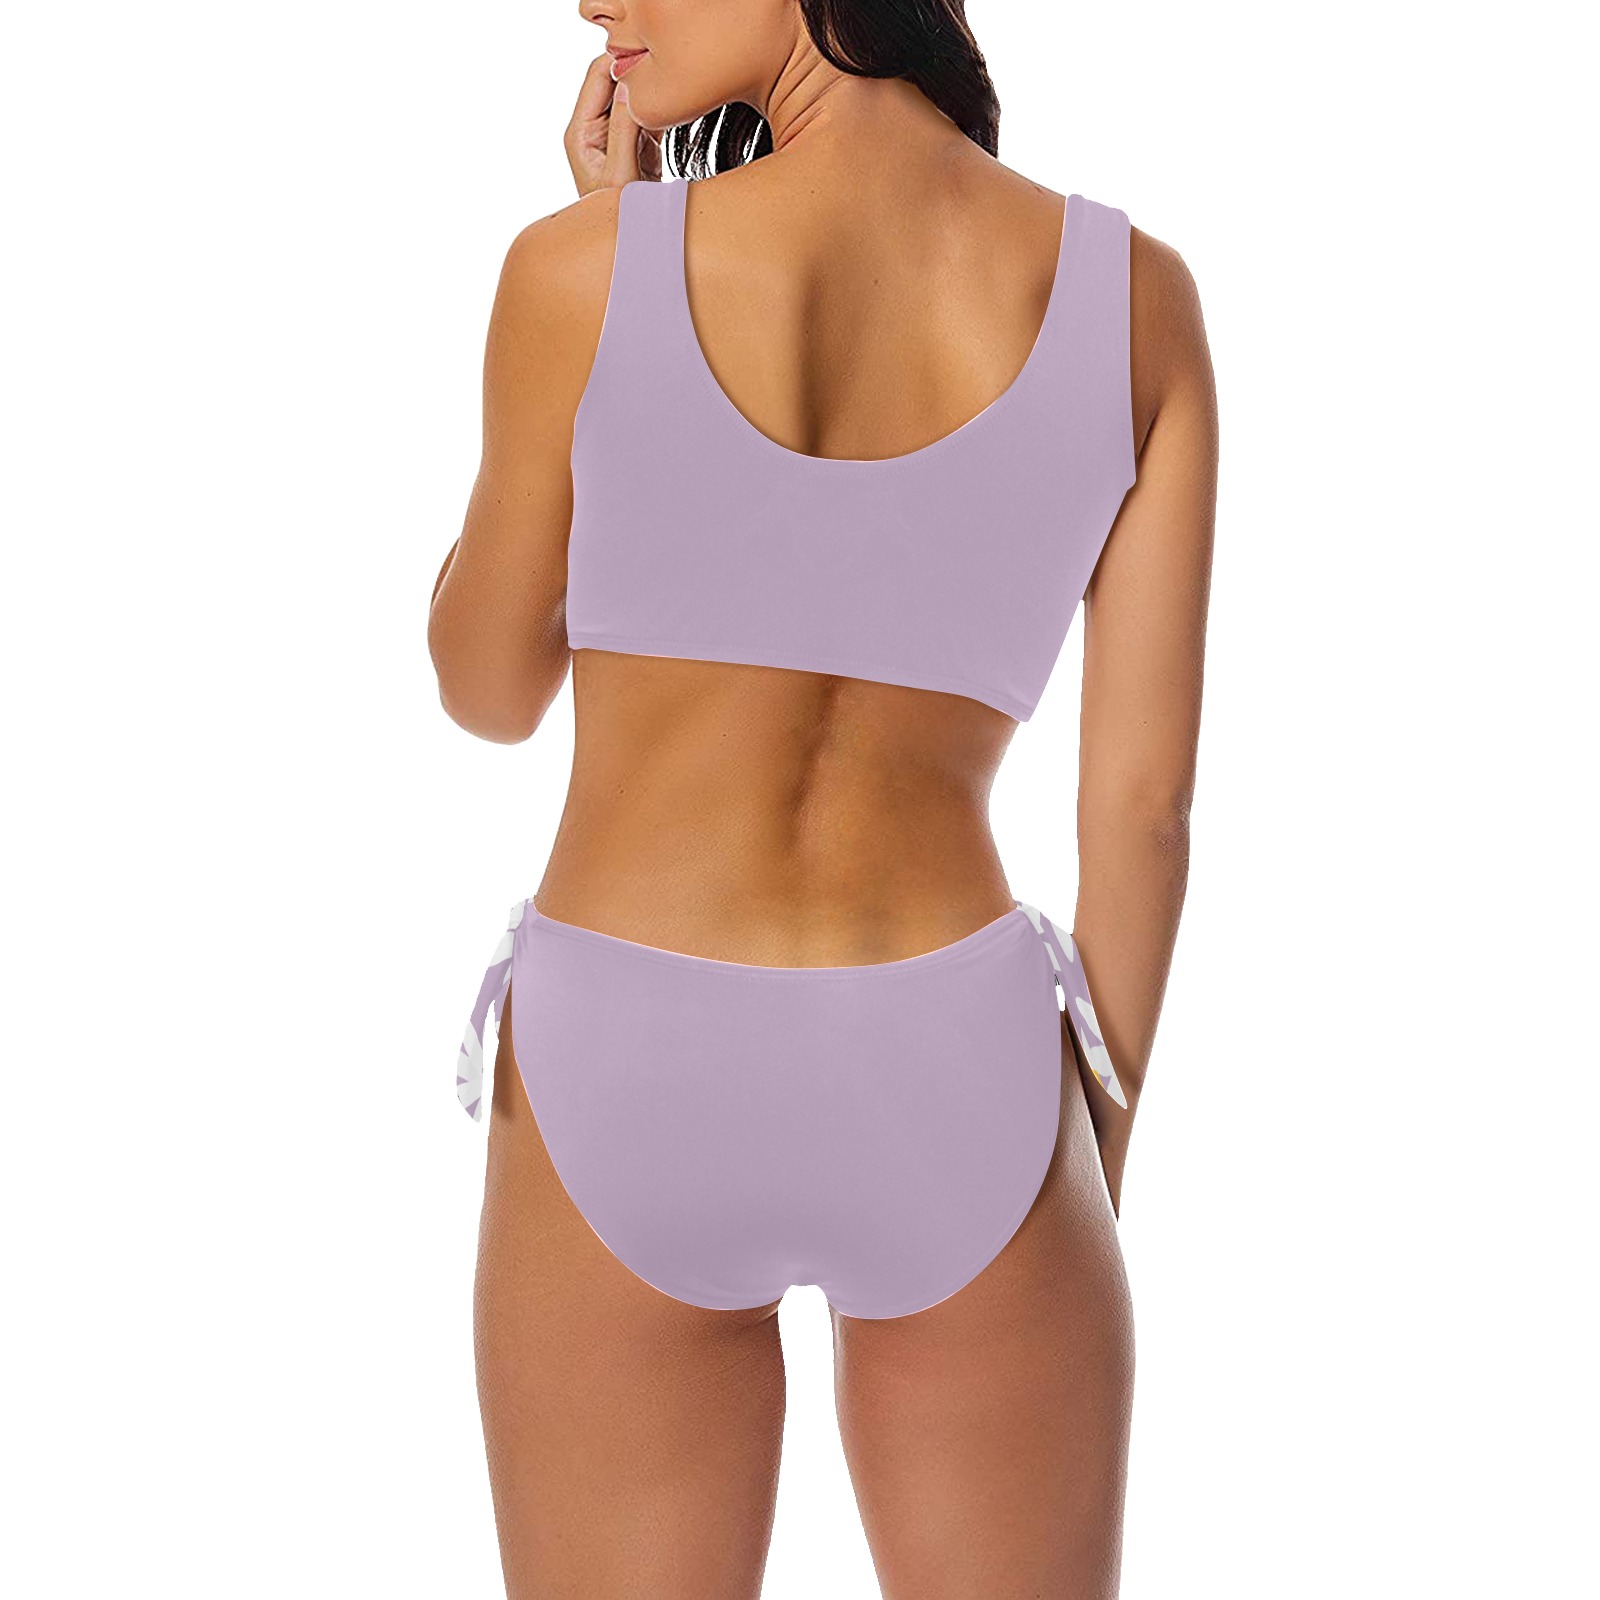 Daisy Woman's Swimwear Lilac Bow Tie Front Bikini Swimsuit (Model S38)